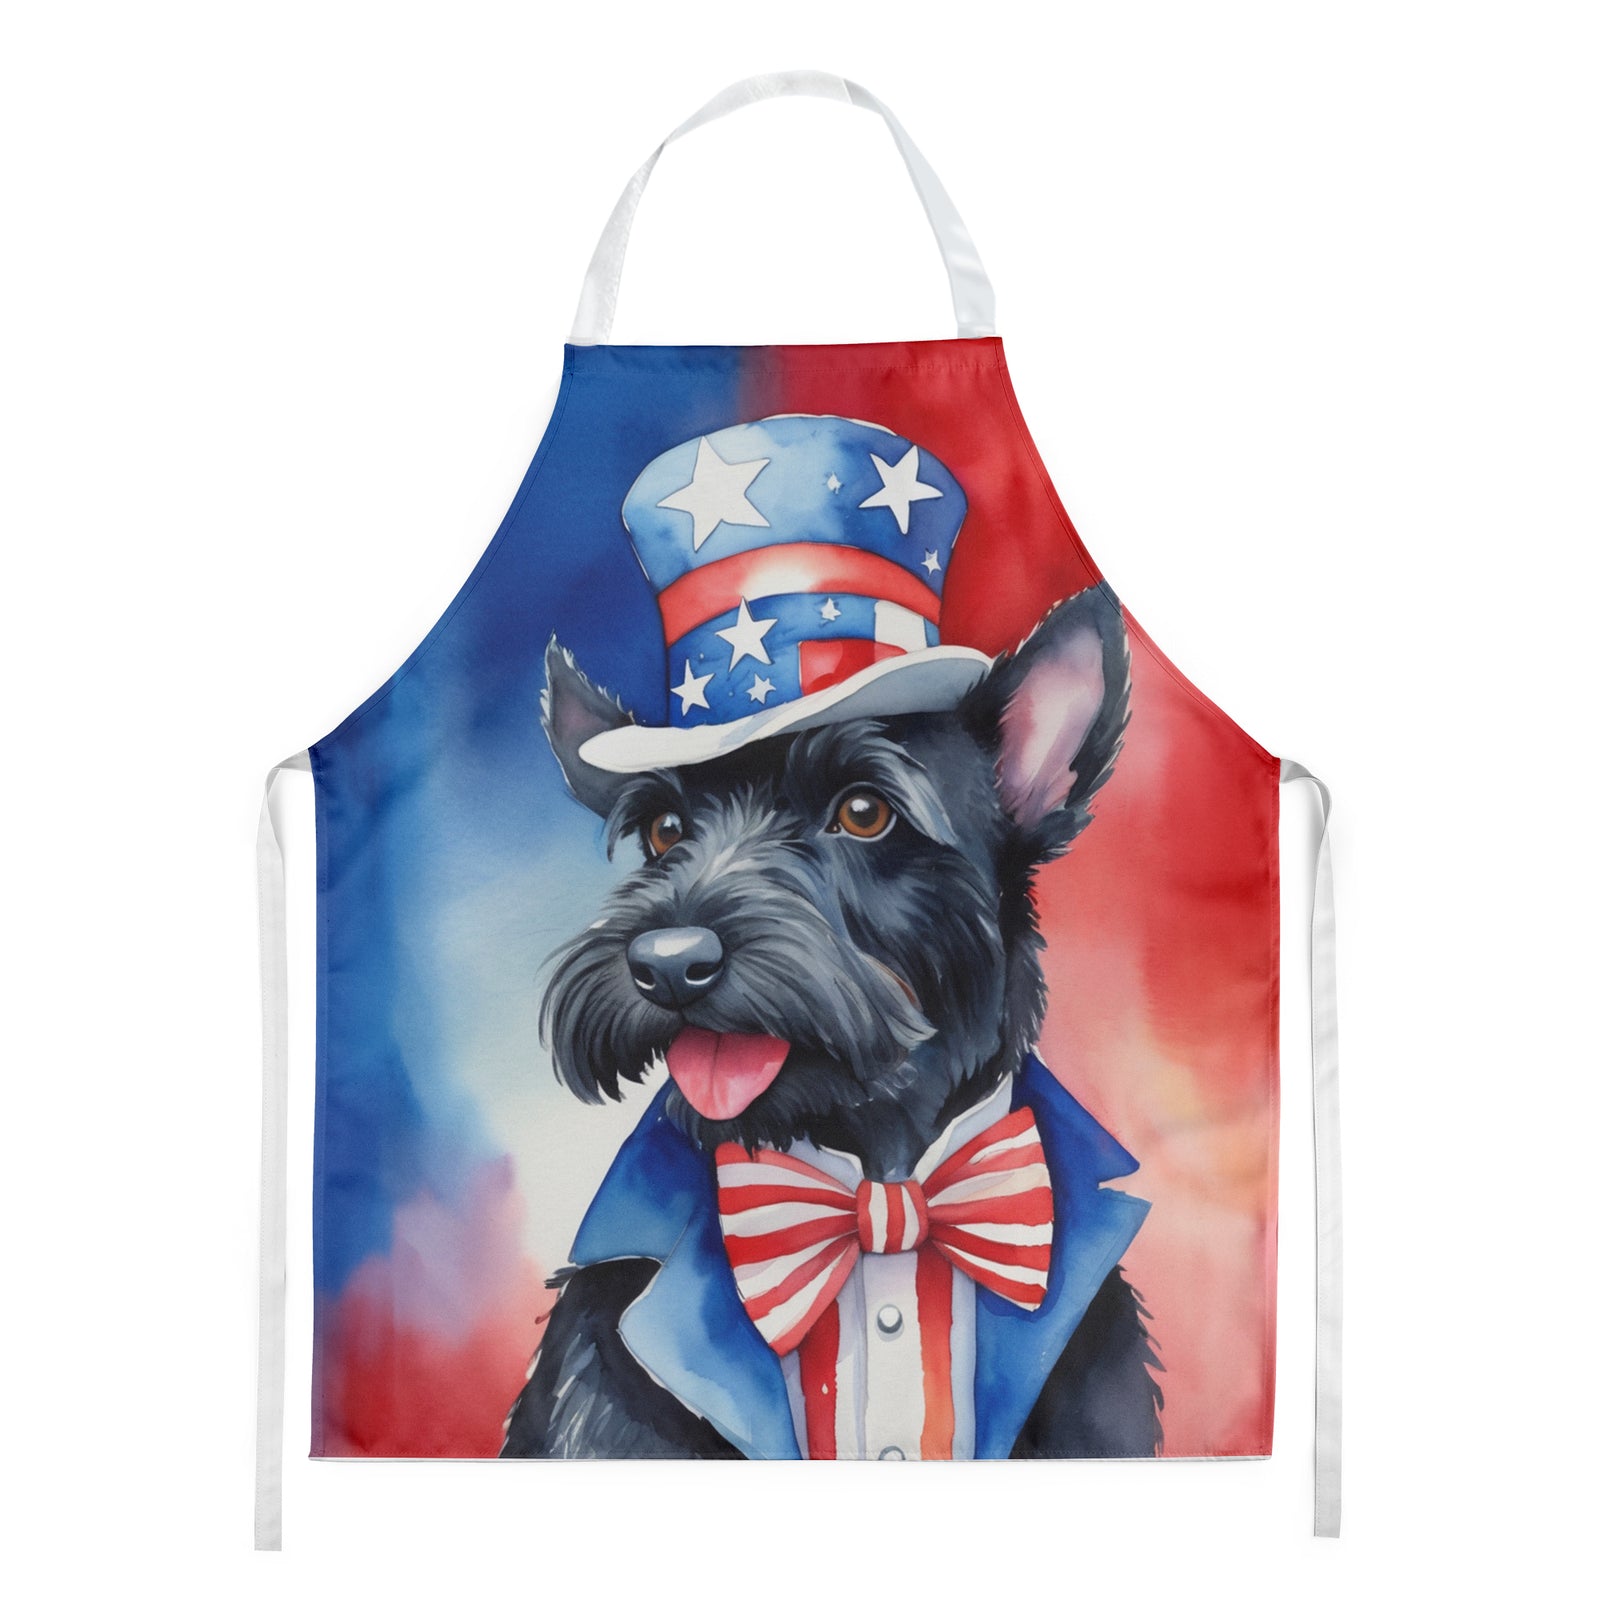 Buy this Scottish Terrier Patriotic American Apron